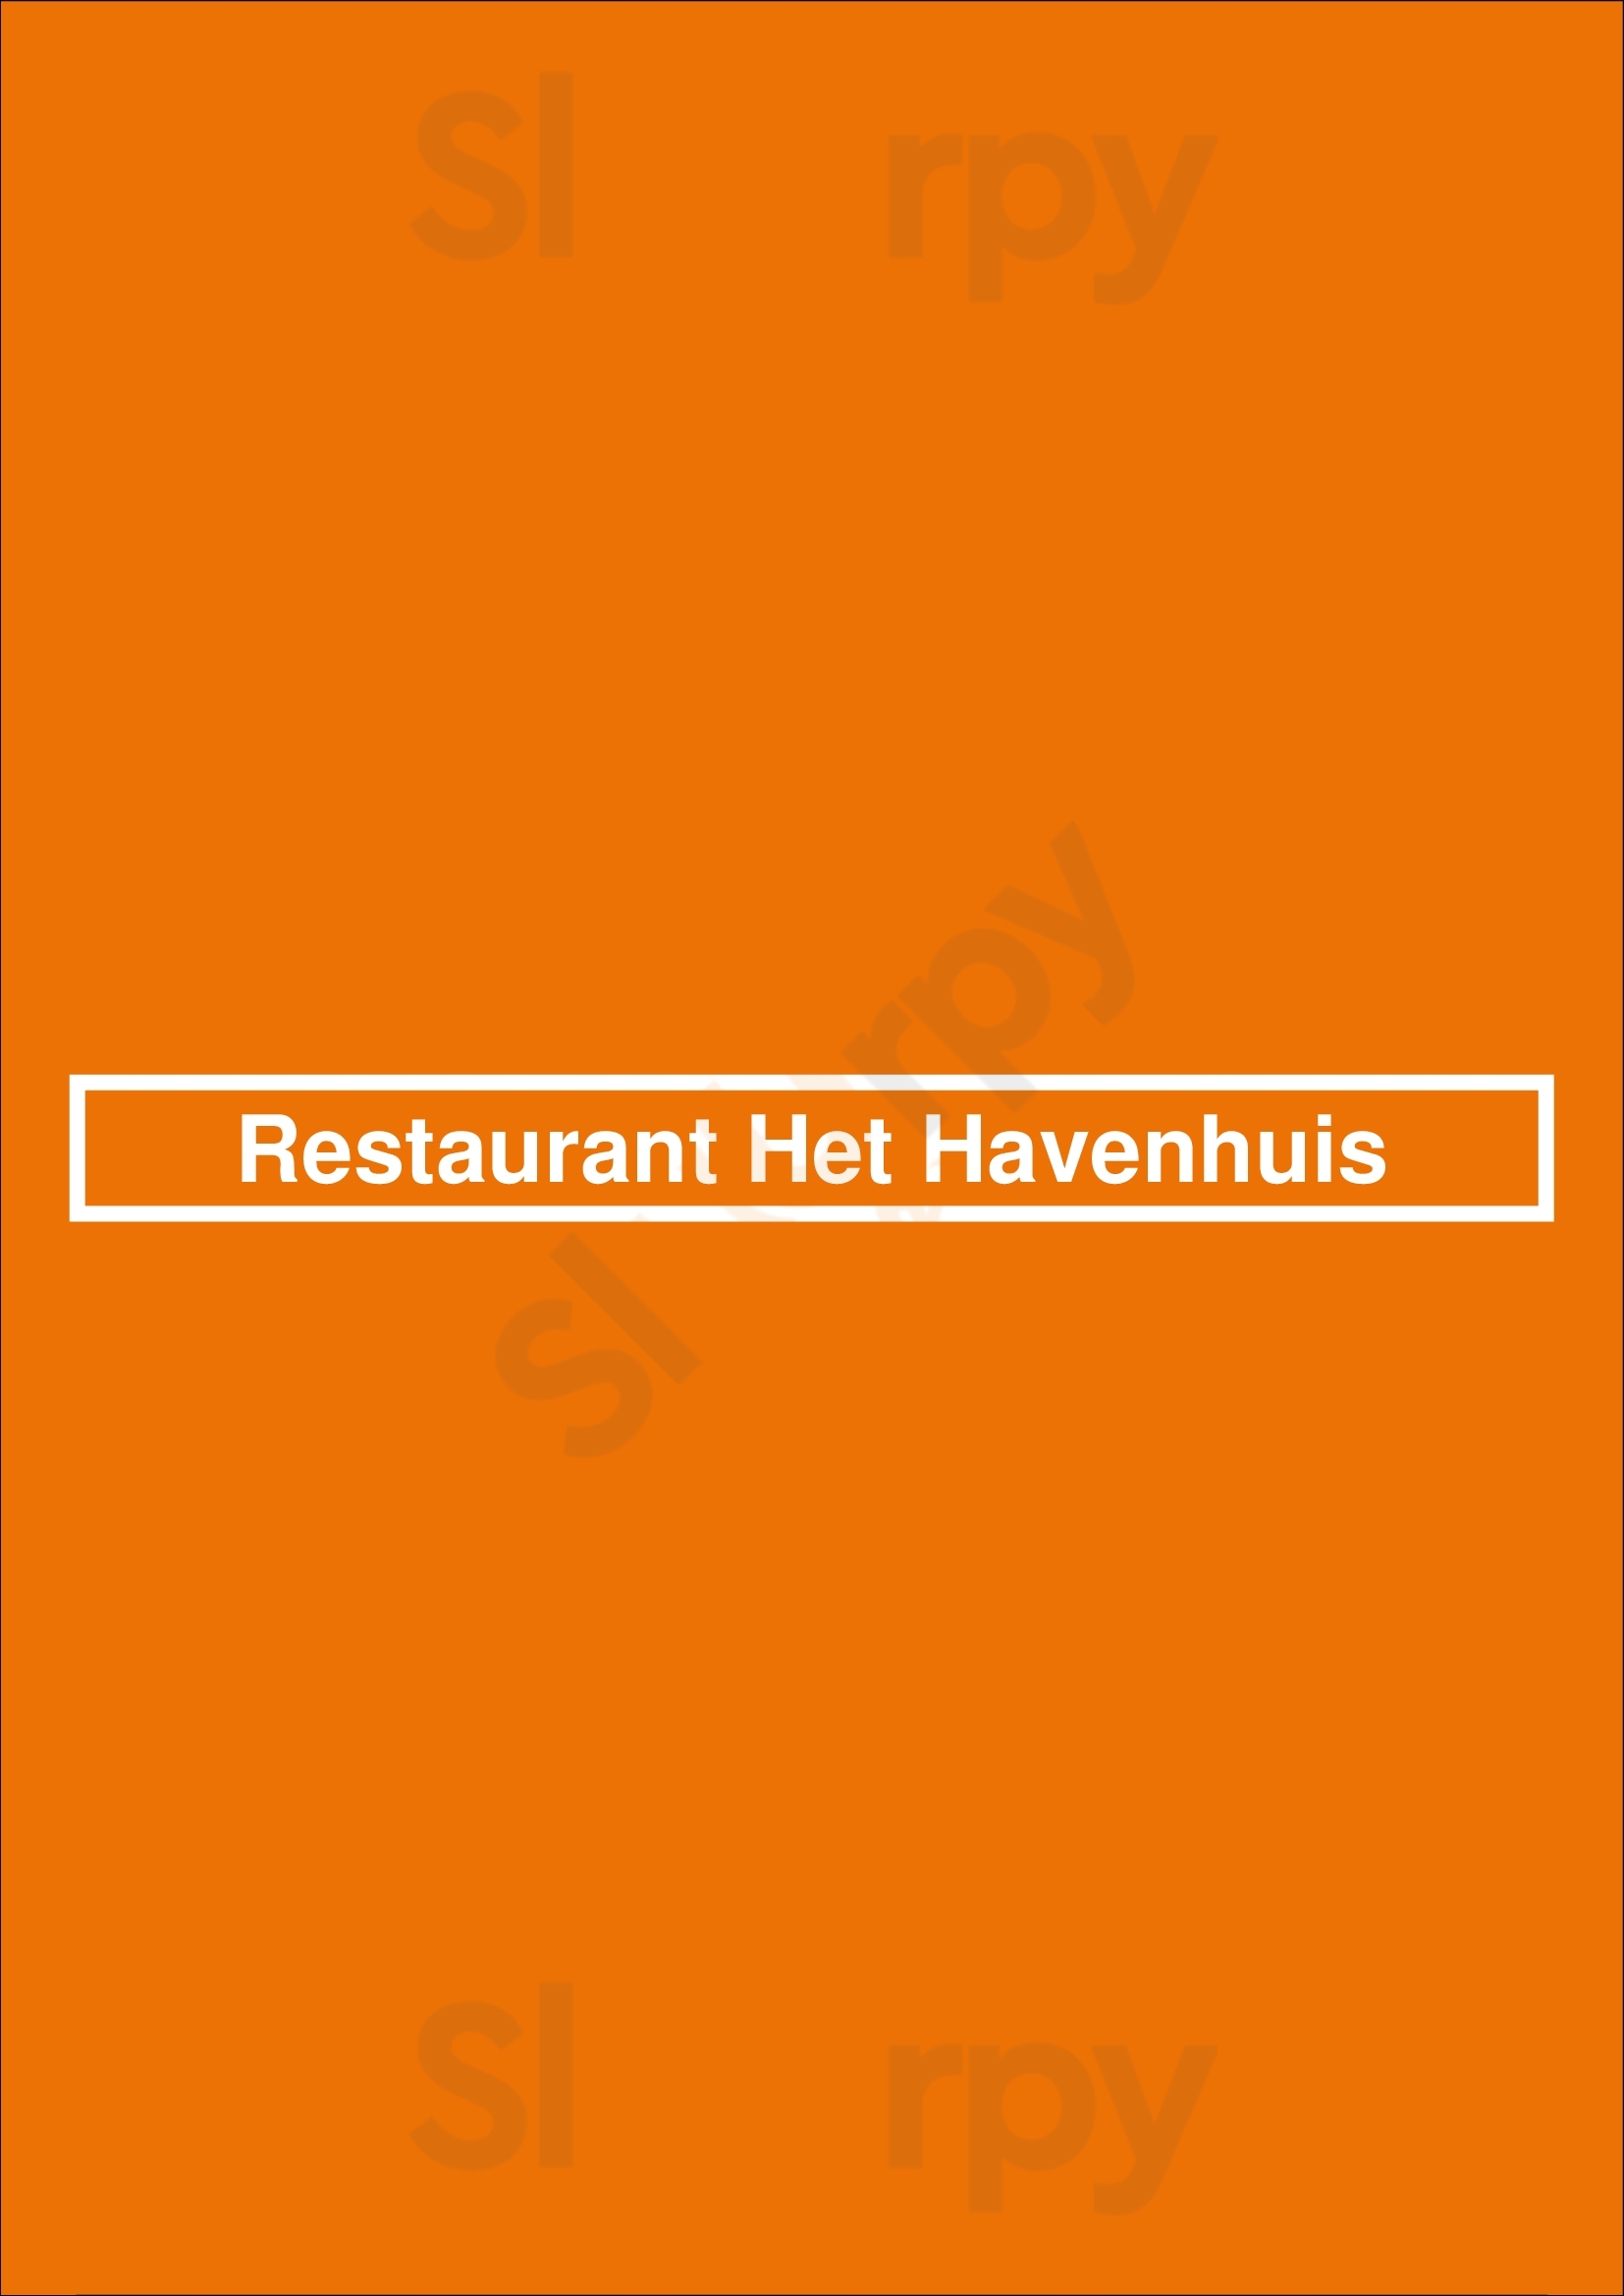 Restaurant Het Havenhuis Etten-Leur Menu - 1